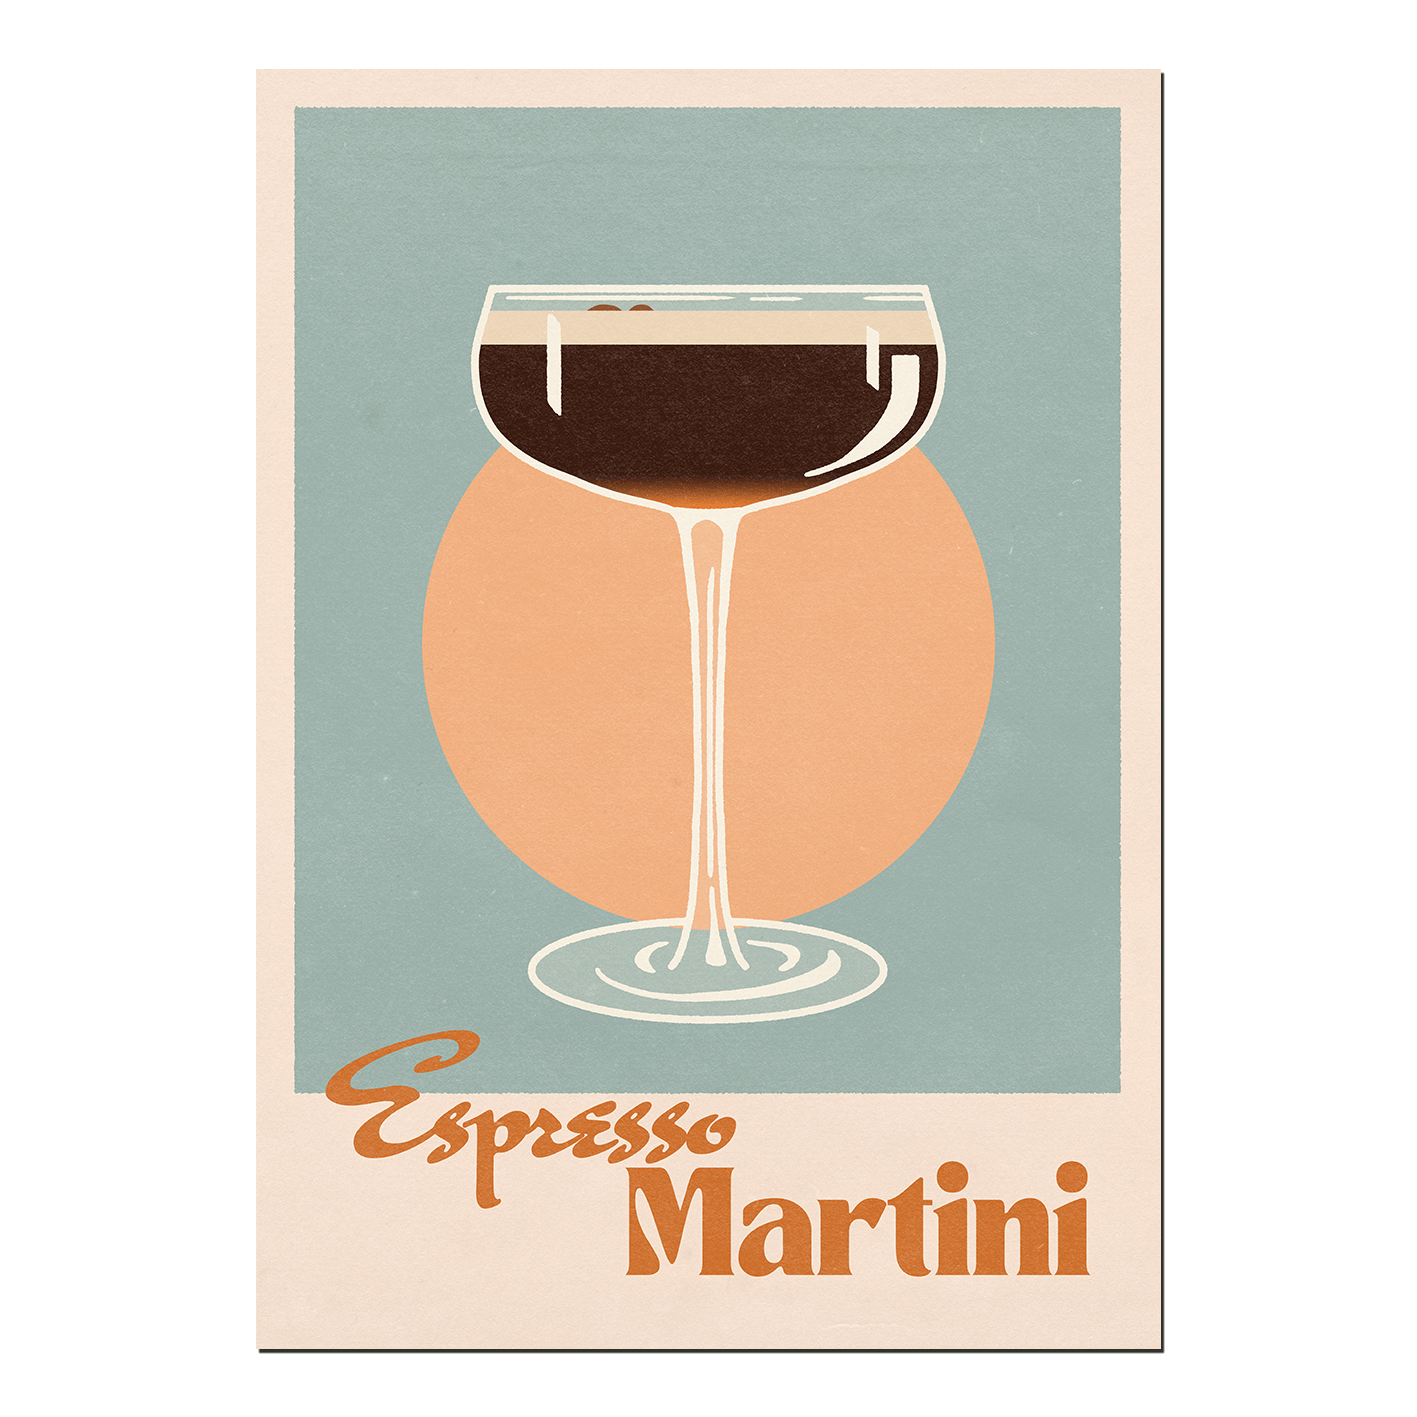 'Espresso Martini' Print